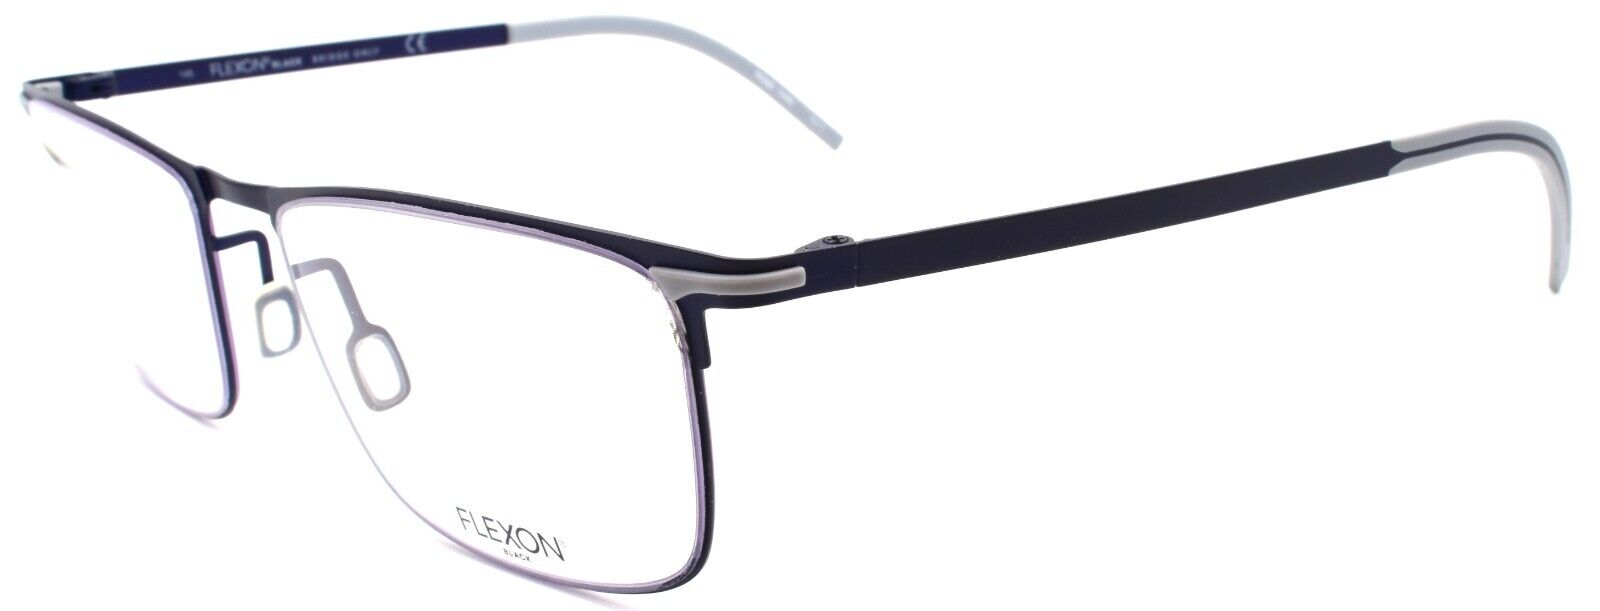 1-Flexon B2005 412 Men's Eyeglasses Frames Navy 55-19-145 Flexible Titanium-883900204545-IKSpecs